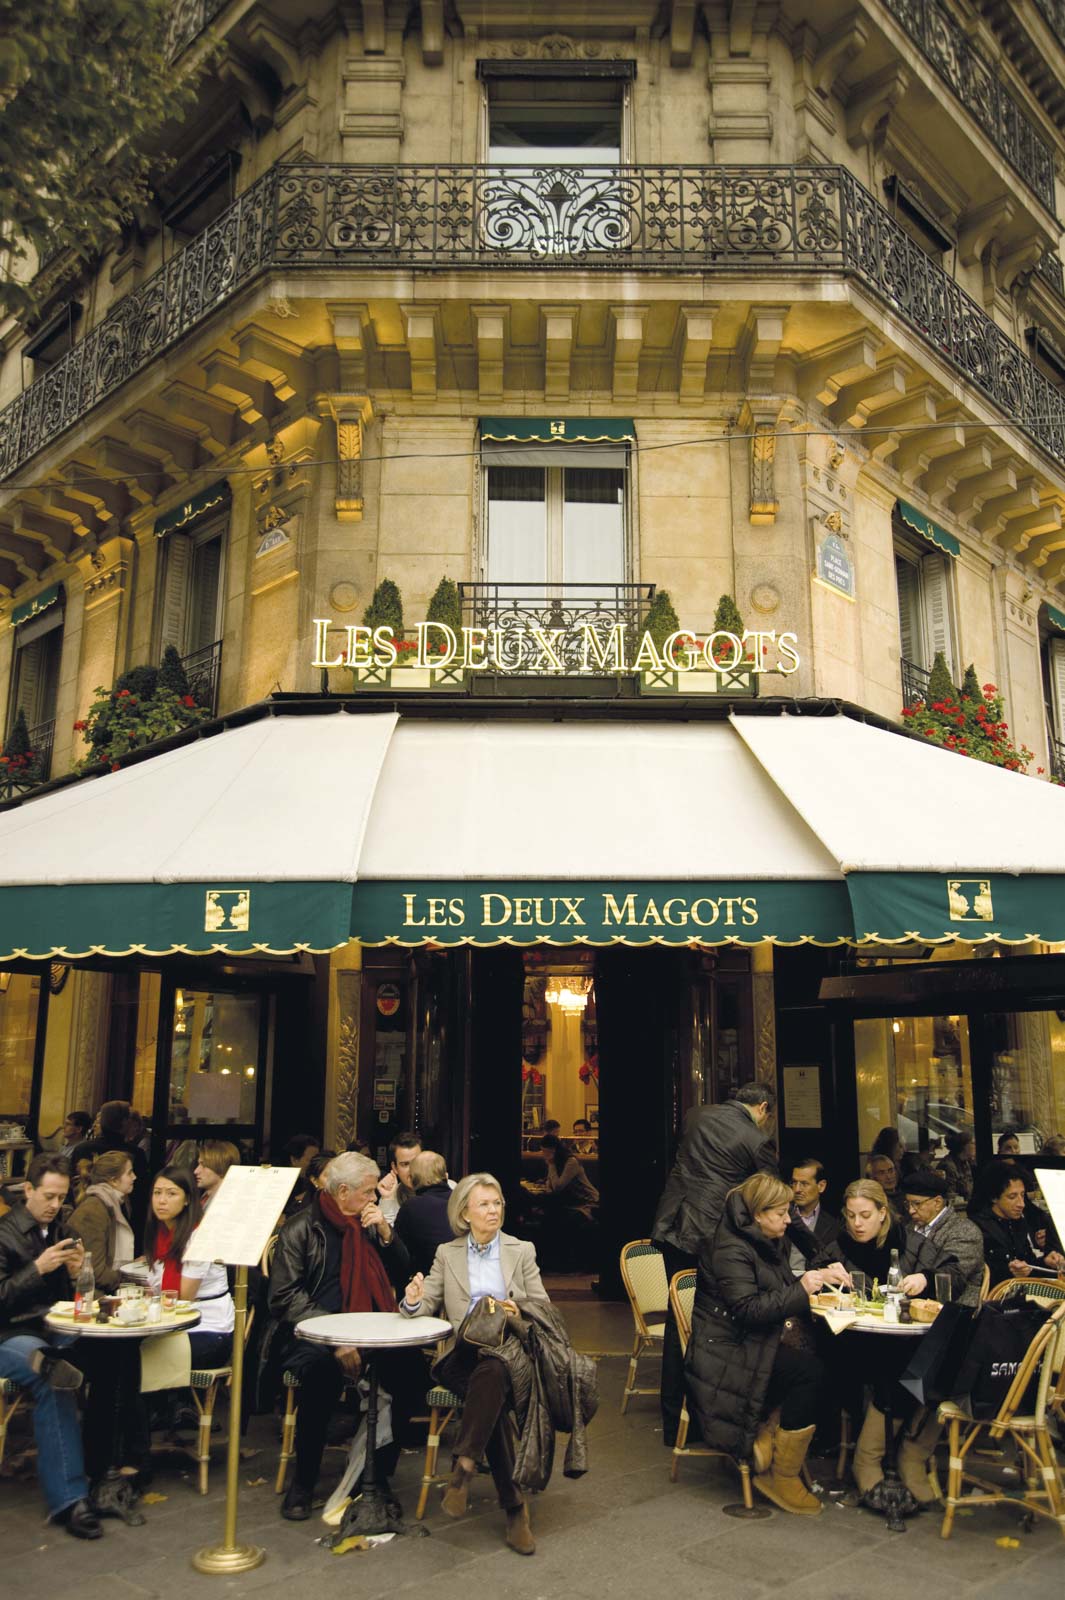 The famous cafe Les Deux Magots on the Boulevard St. Germain, Paris, France